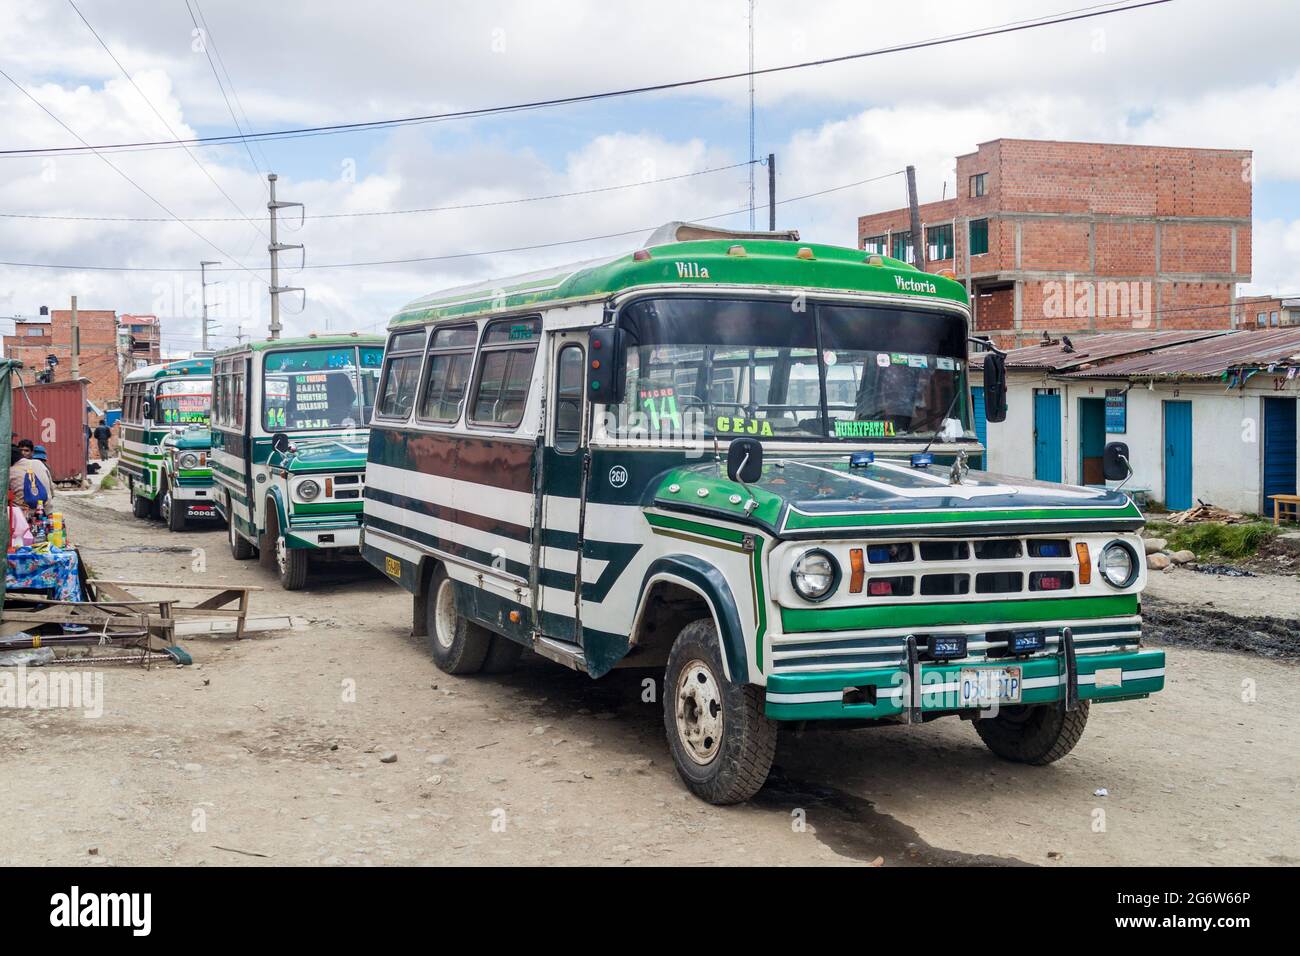 EL ALTO, BOLIVIEN - 23. APRIL 2015: Busse eines öffentlichen Nahverkehrs in El Alto, Bolivien Stockfoto